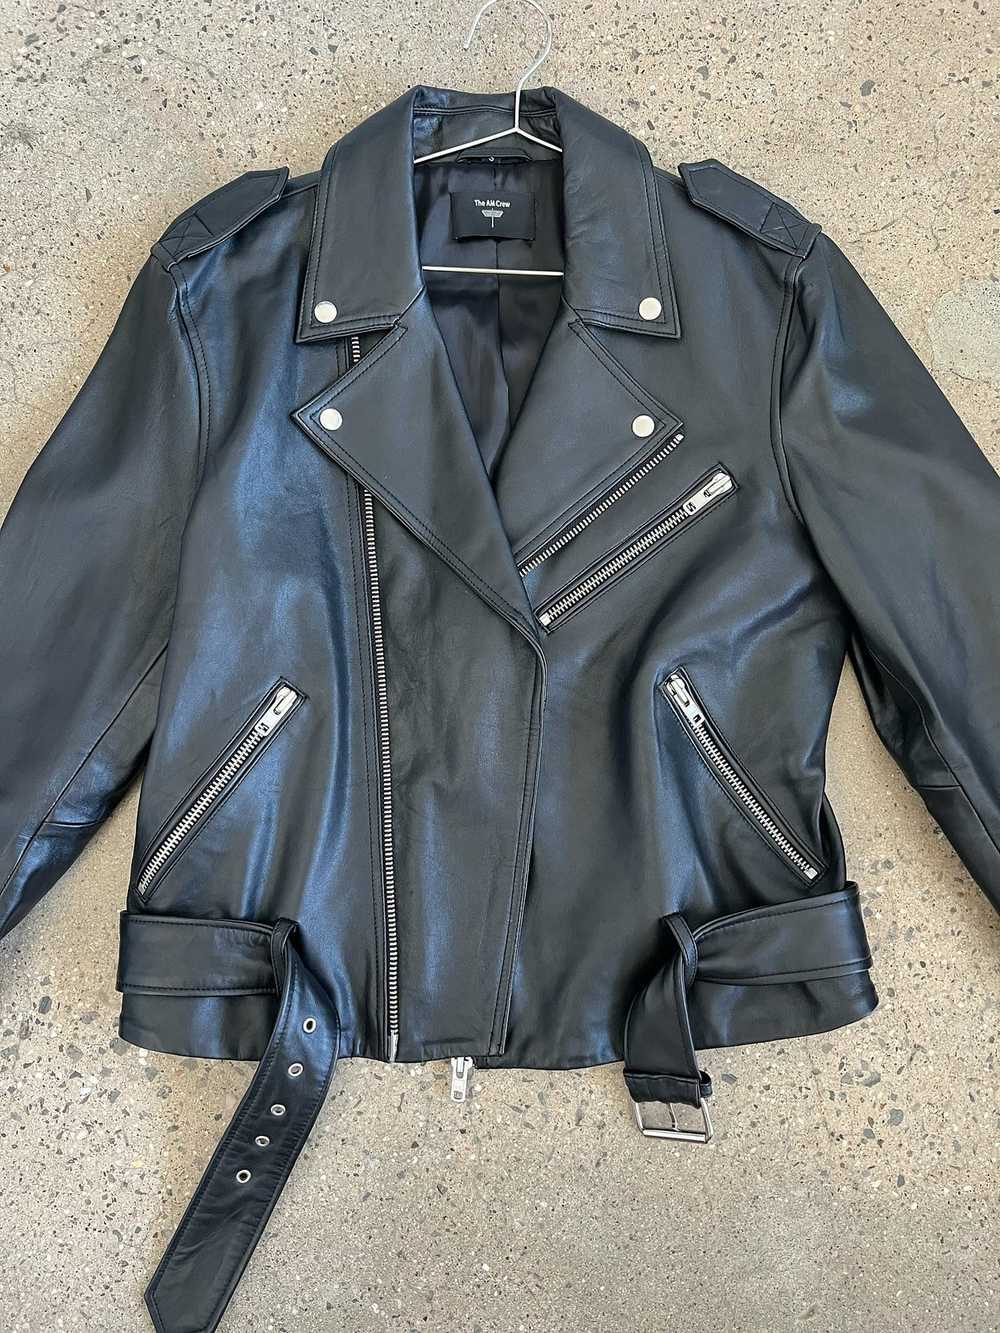 Leather Jacket The AM Crew leather jacket - image 2